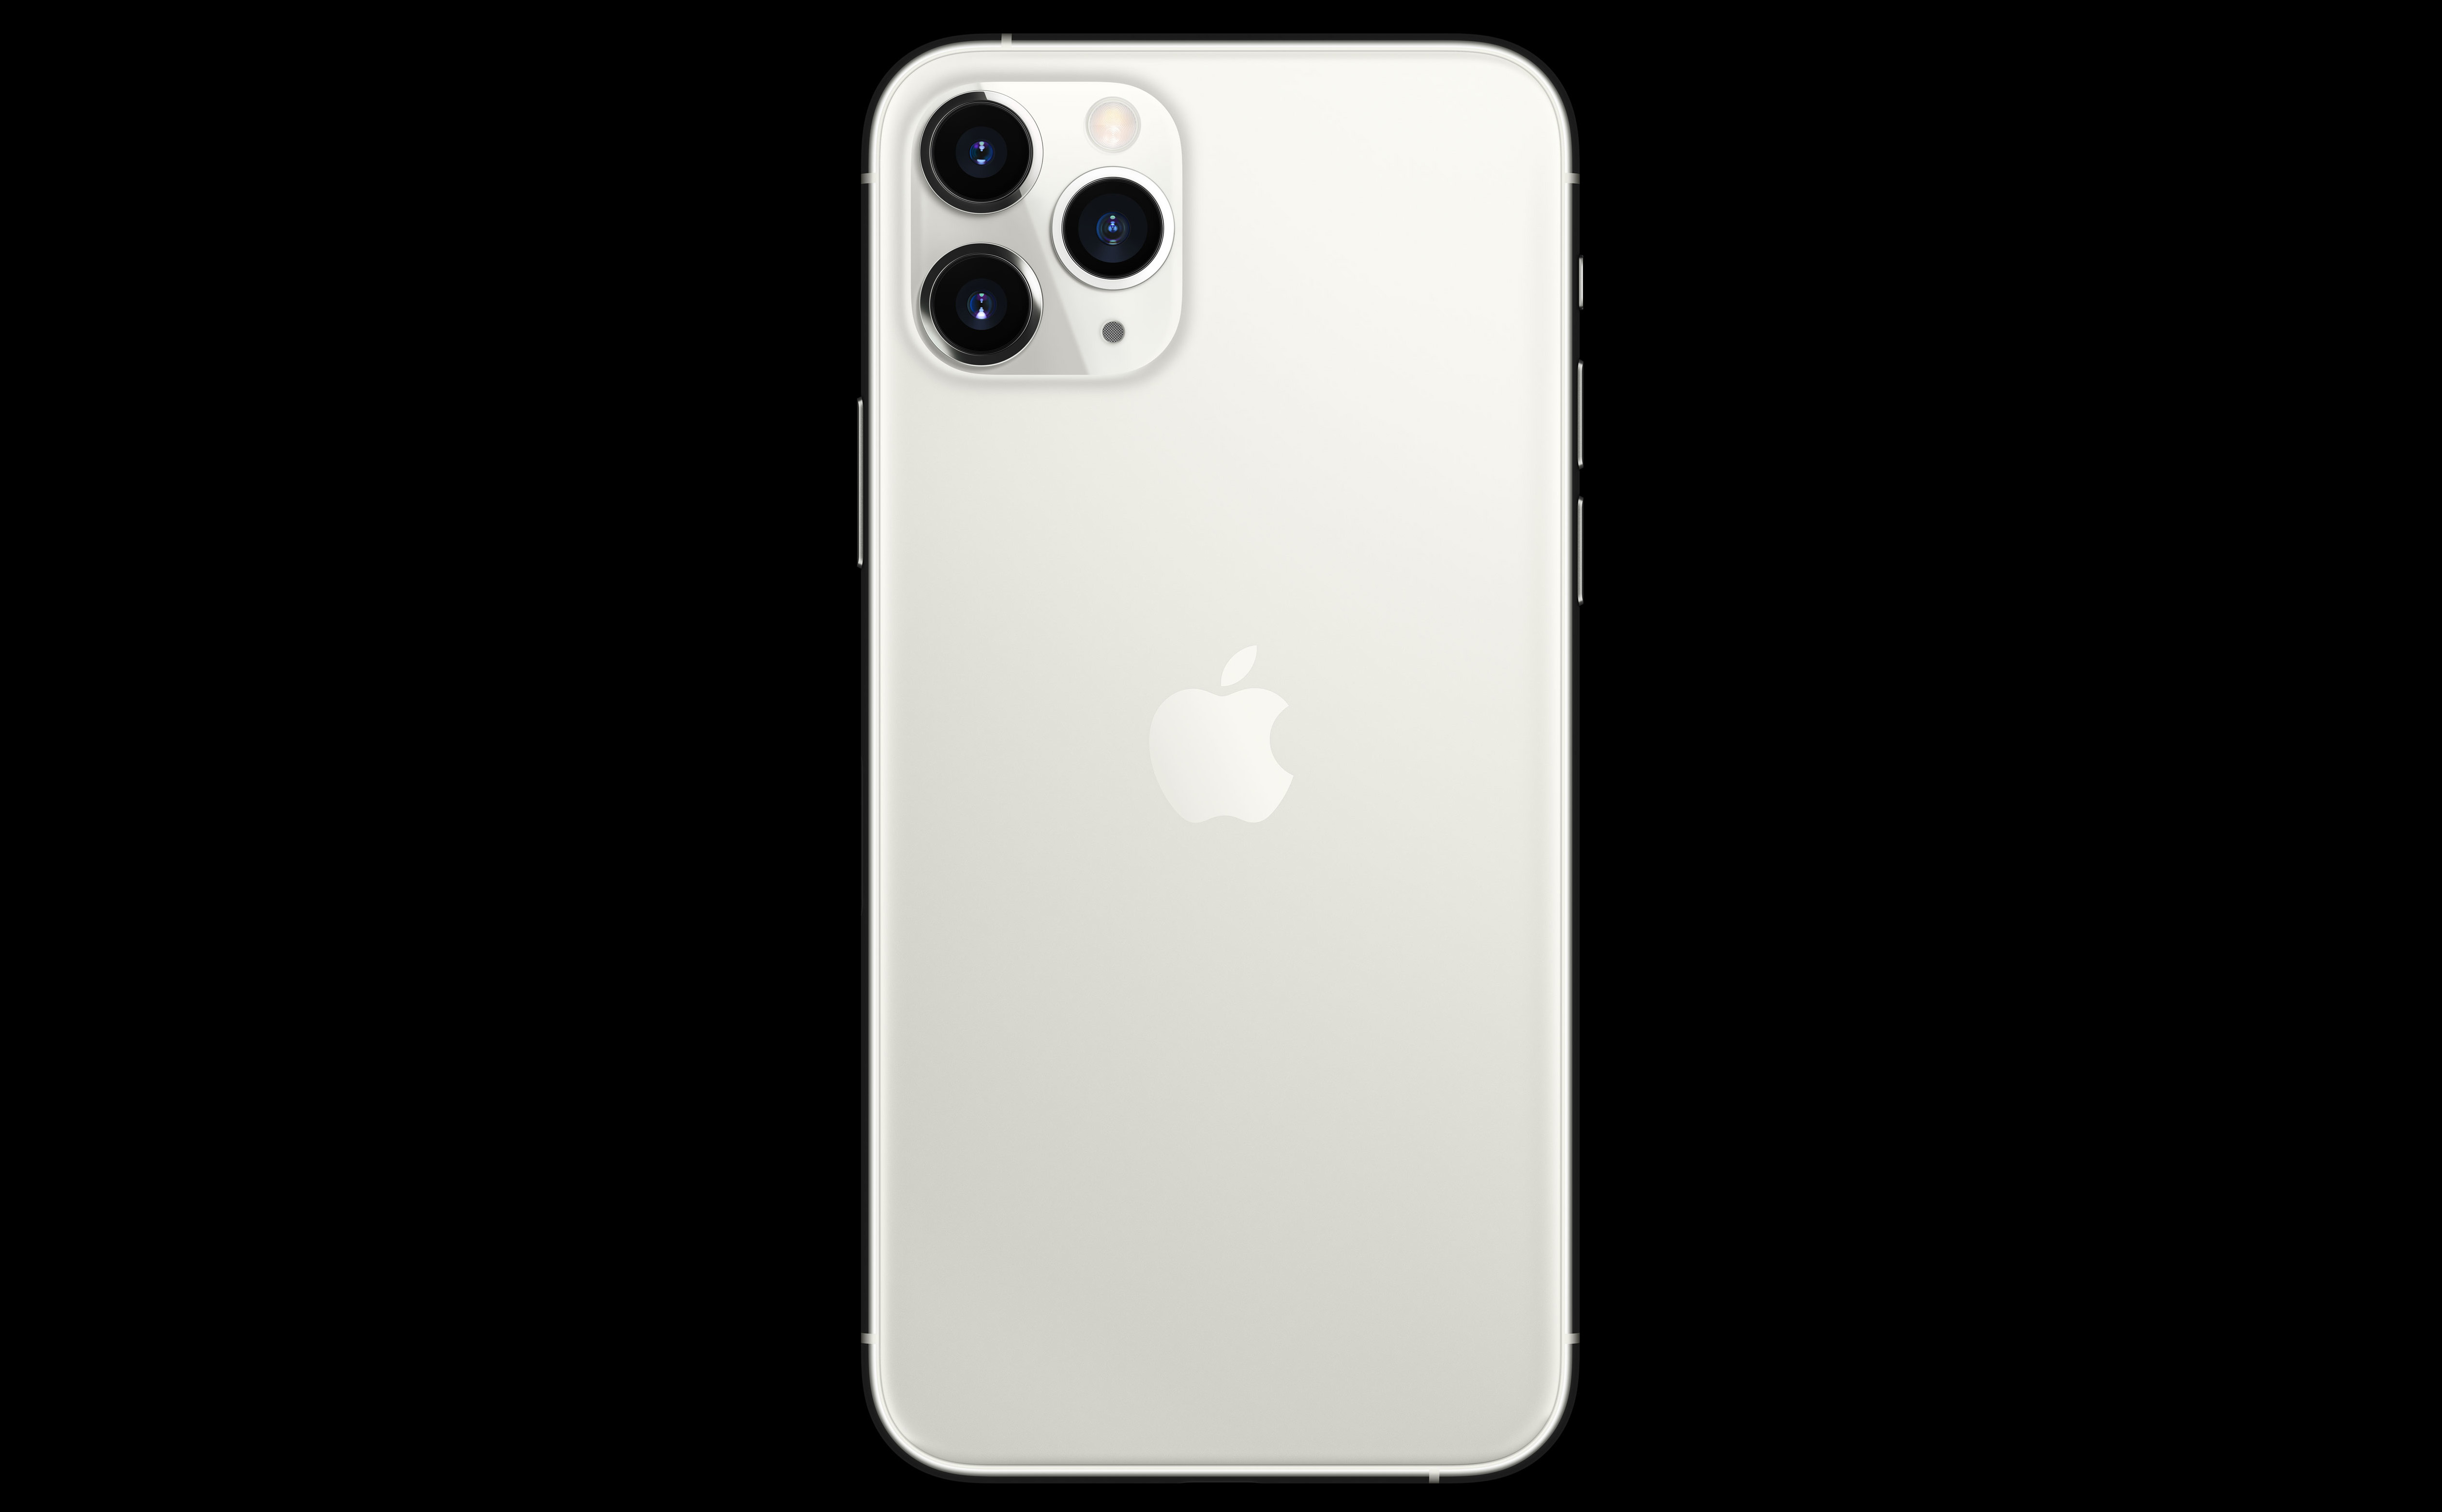 iPhone 11 Pro Max - cụm 3 camera Chiếc iPhone 11 Pro Max với cụm 3 camera đẳng cấp không chỉ giúp bạn chụp ảnh siêu đẹp mà còn mang đến trải nghiệm vô cùng tuyệt vời khi sáng tạo và chỉnh sửa những bức ảnh độc đáo. Hãy khám phá những khoảnh khắc đẹp nhất với chiếc điện thoại tuyệt vời này.